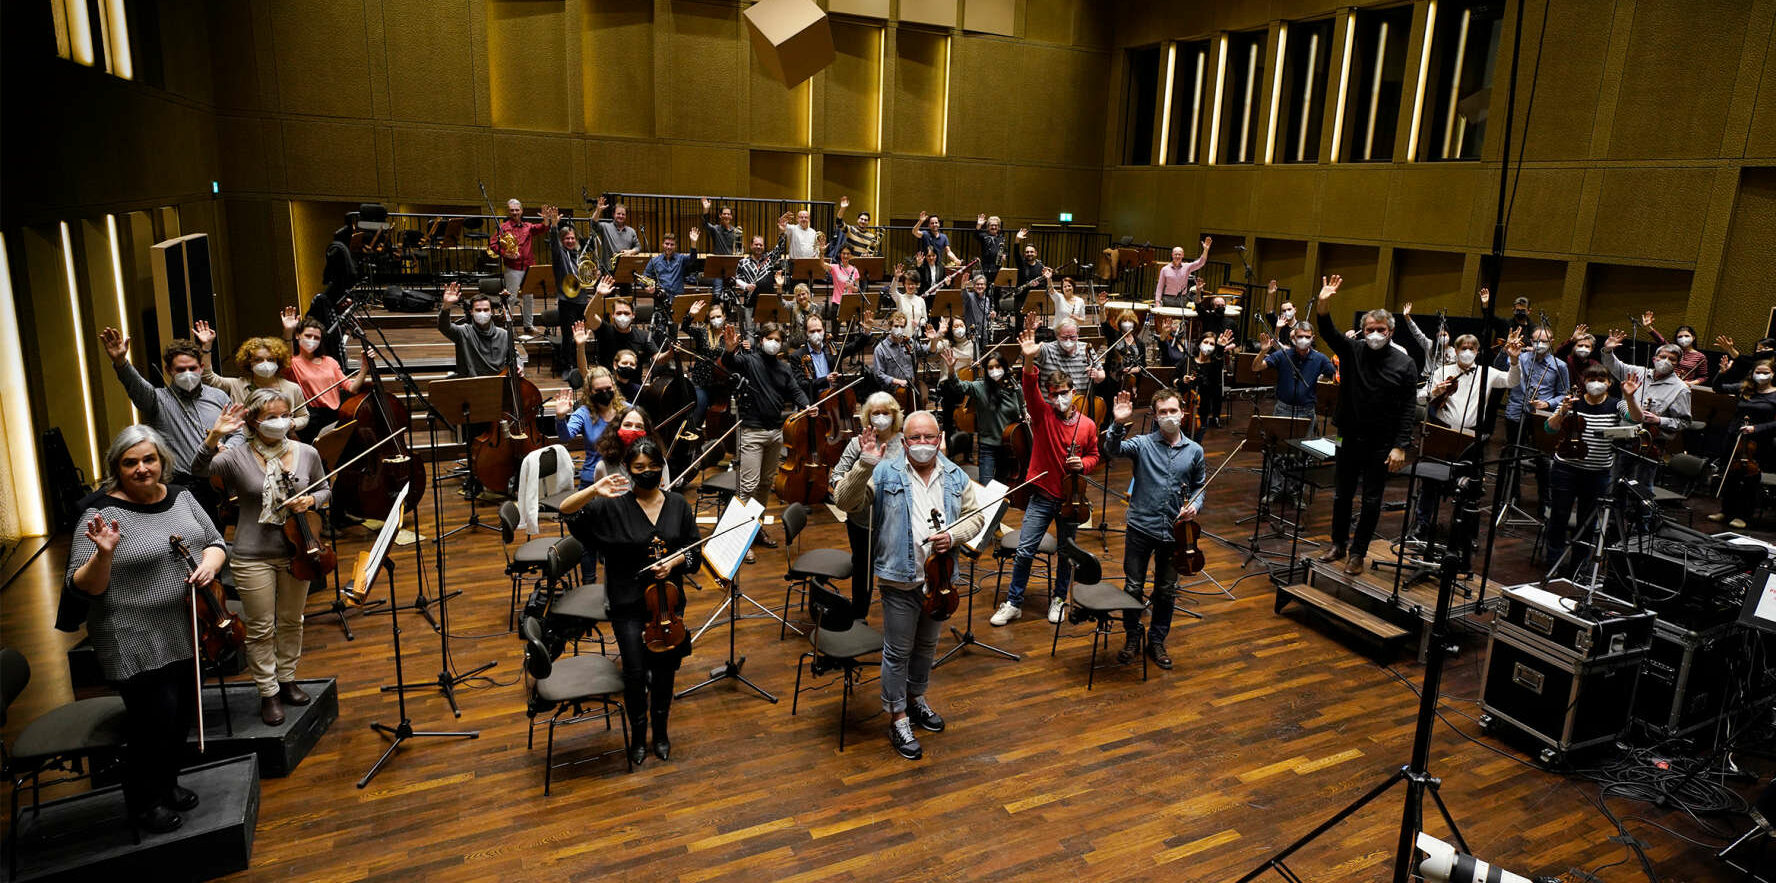 Nach der Ausstrahlung auf ORF III wird auch der Auftritt des Bruckner Orchesters on demand auf den Facebook- und YouTube-Kanälen aller teilnehmenden Orchester ausgestrahlt.